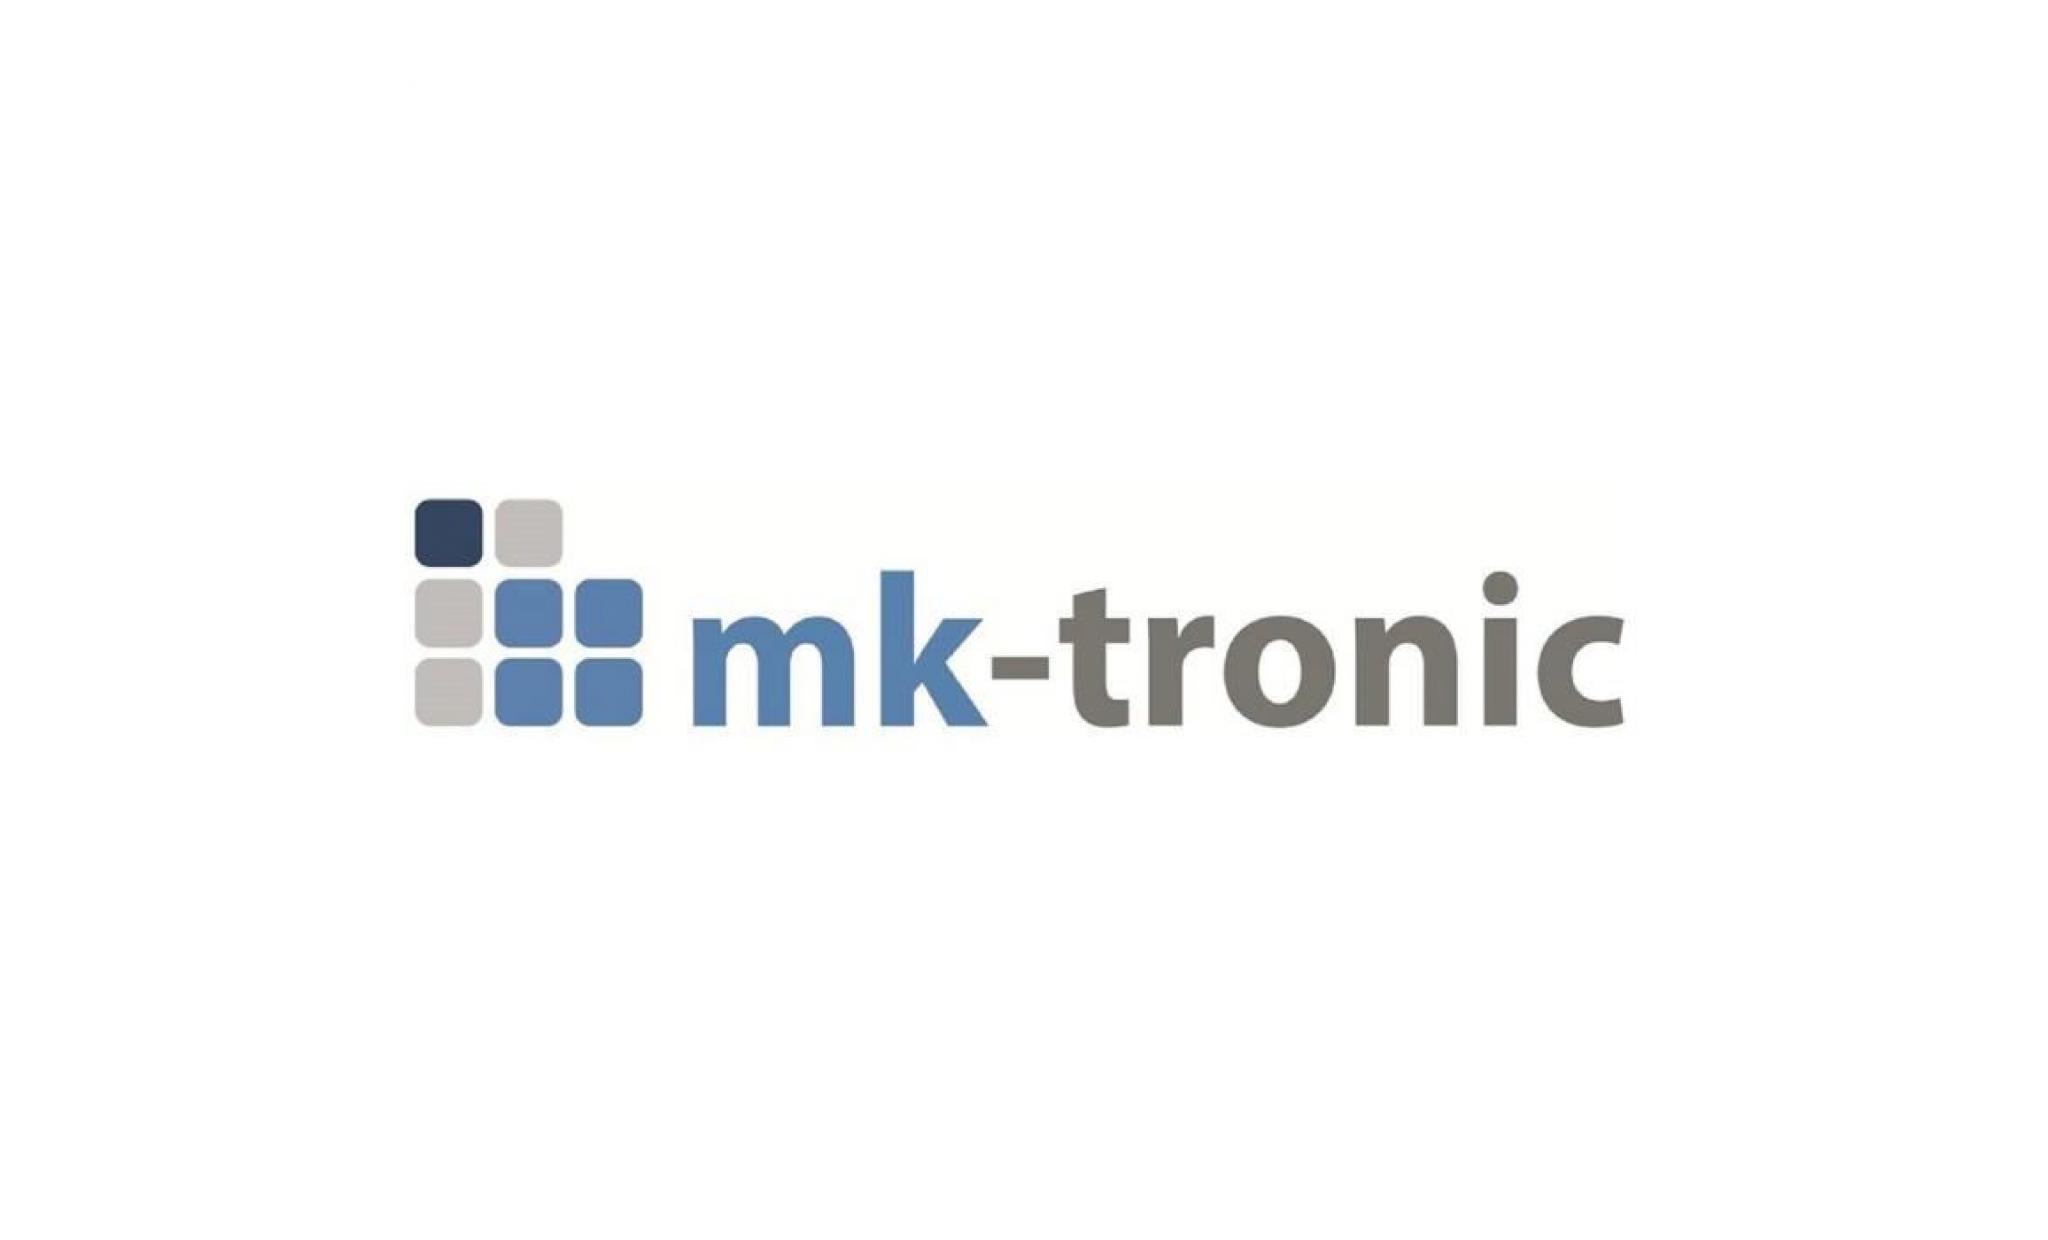 ventilateur usb dans la couleur turquoise (sk 676b), une métho de pratique  de refroidissement de mk tronic